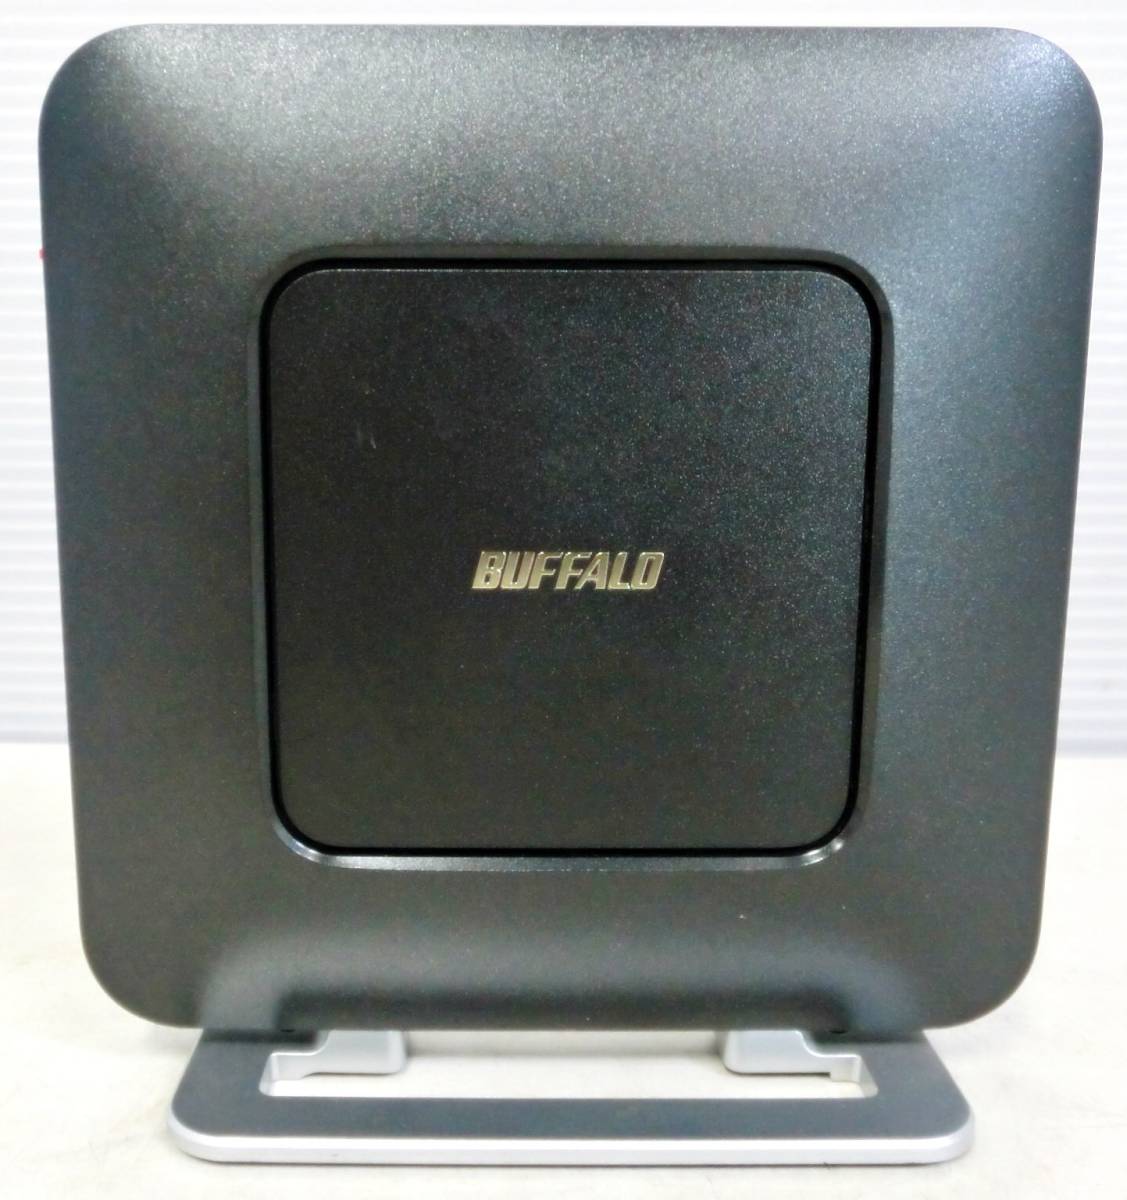 BUFFALO 無線LAN Wi-Fi ルーター WSR-2533DHP 親機 ネットワーク機器 クールブラック バッファローの画像2